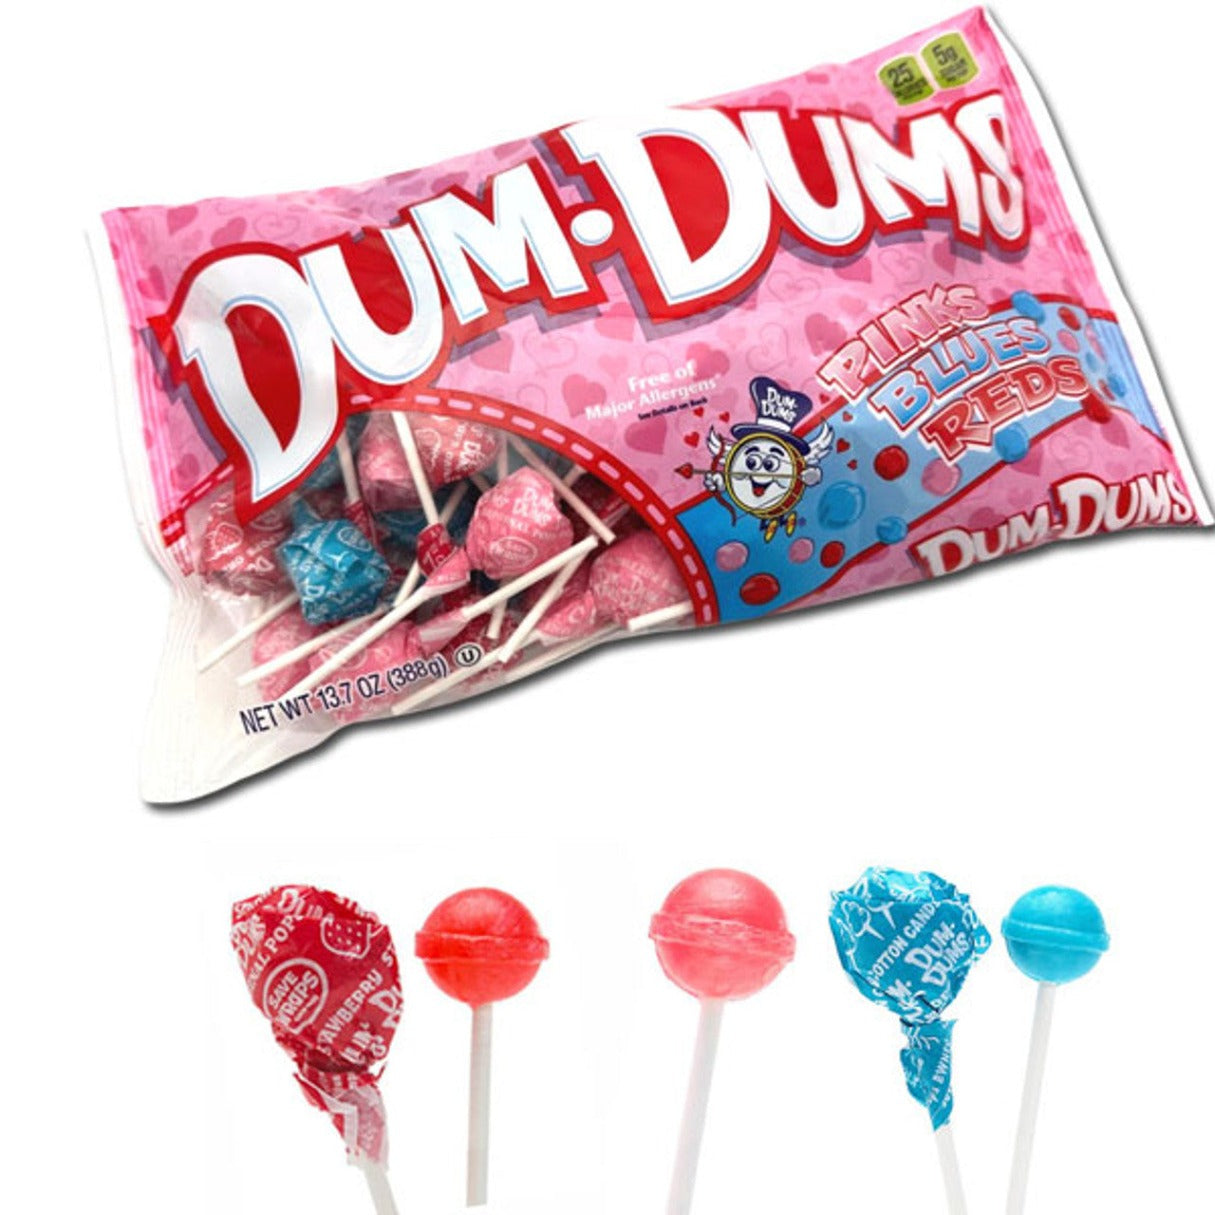 Spangler Dum Dum Pops Pink, Red & Blue Bag  13.7oz - 12ct